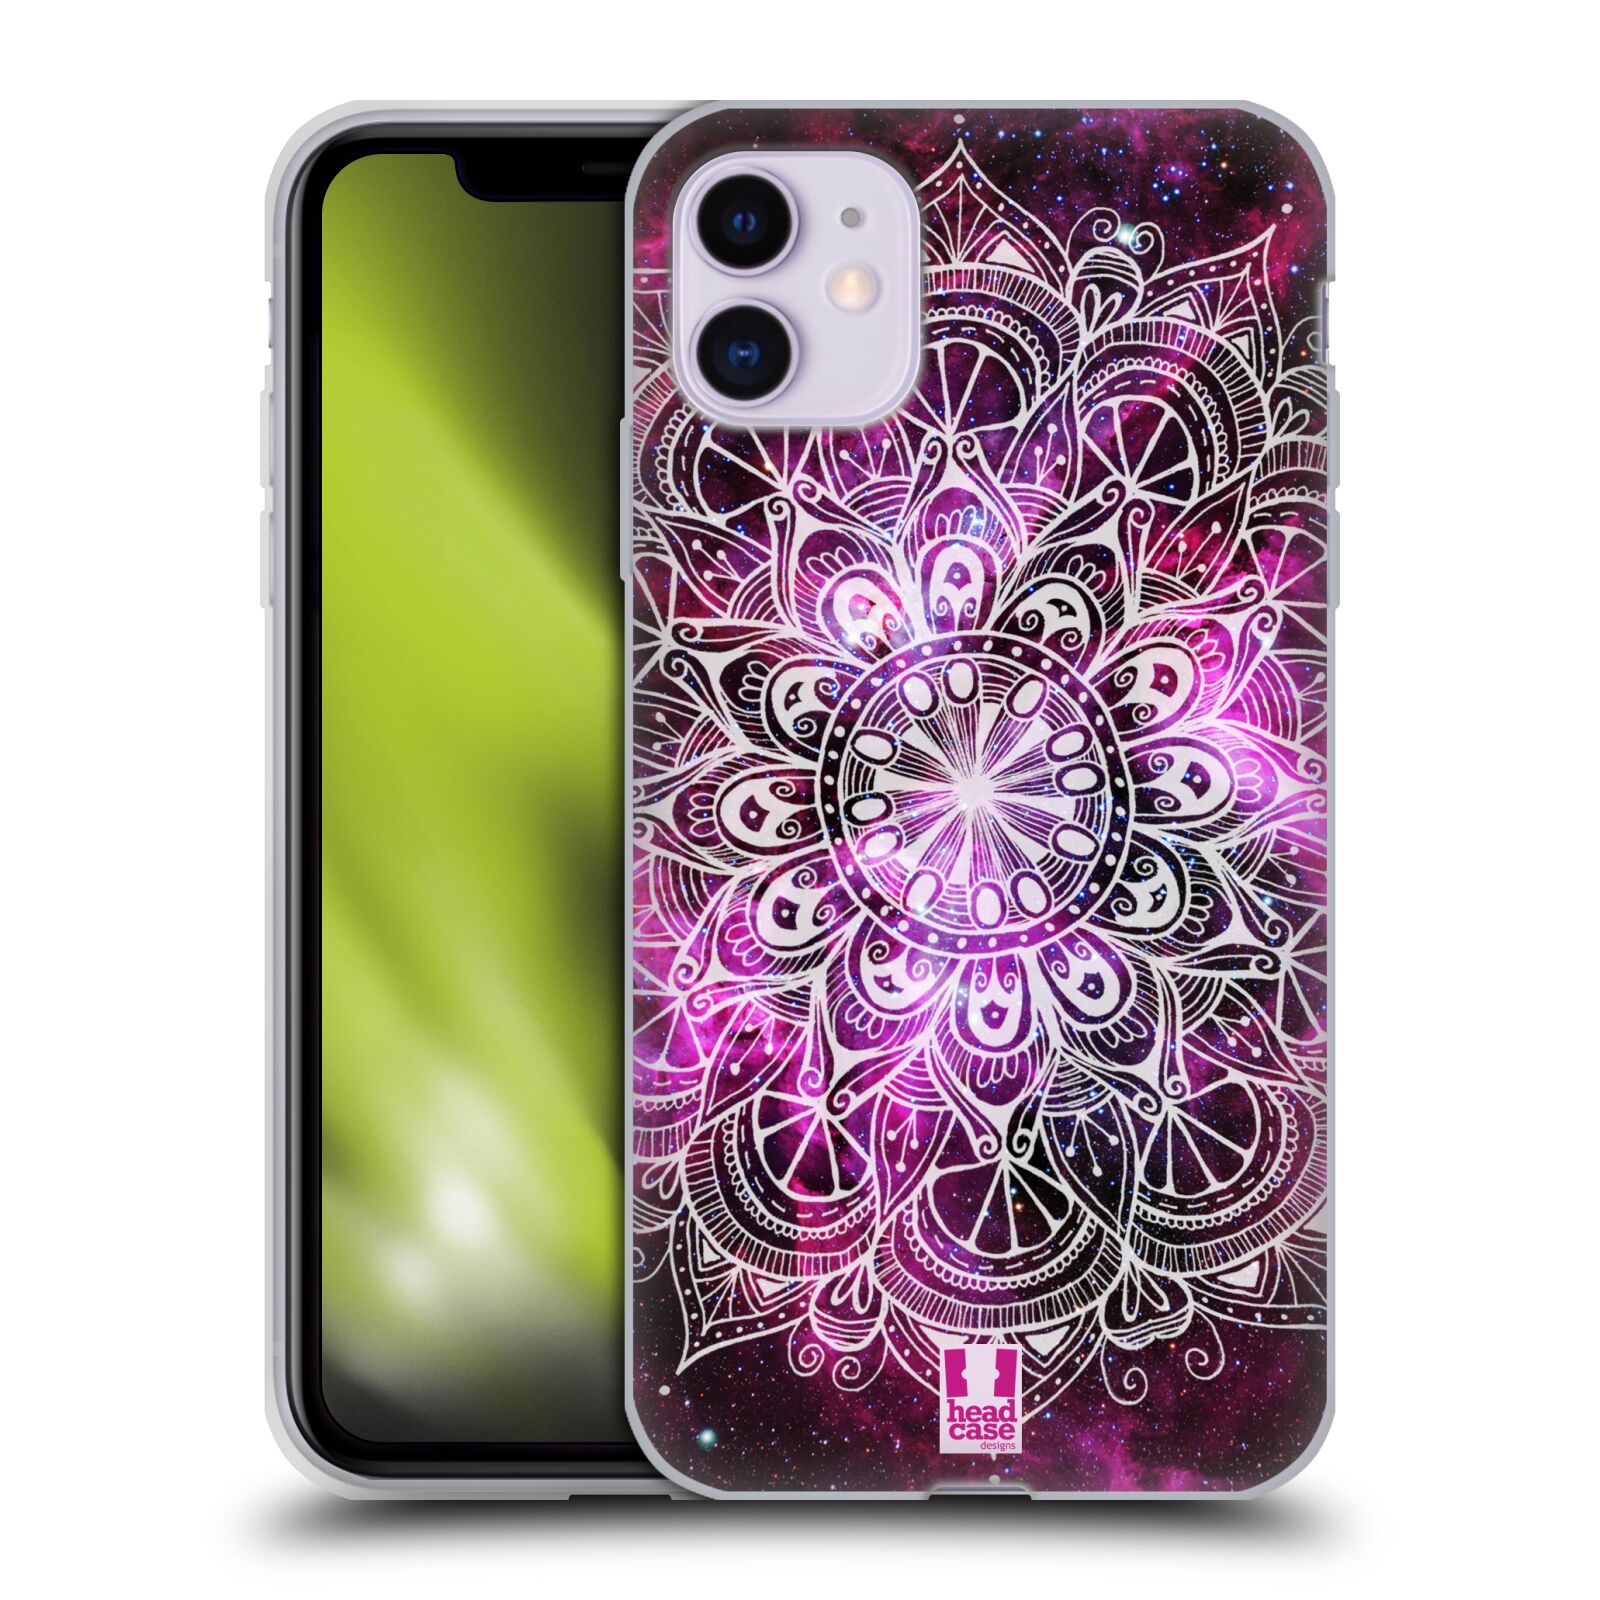 Silikonové pouzdro na mobil Apple iPhone 11 - Head Case - Mandala Doodle Nebula (Silikonový kryt, obal, pouzdro na mobilní telefon Apple iPhone 11 s displejem 6,1" s motivem Mandala Doodle Nebula)